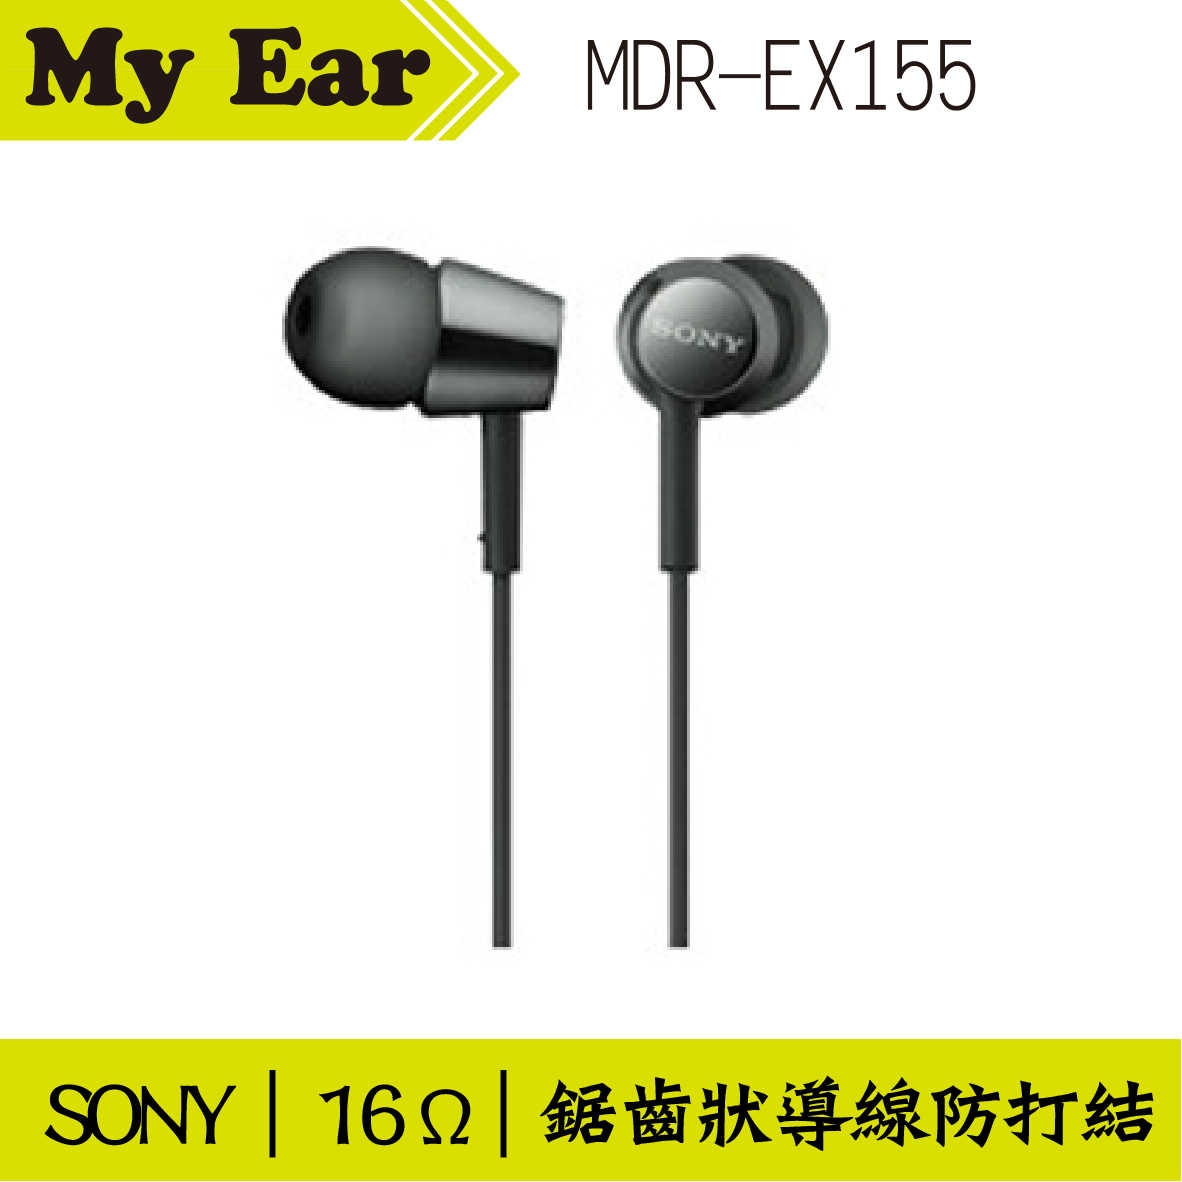 SONY MDR-EX155 入耳式立體聲耳機 黑色 | My Ear 耳機專門店